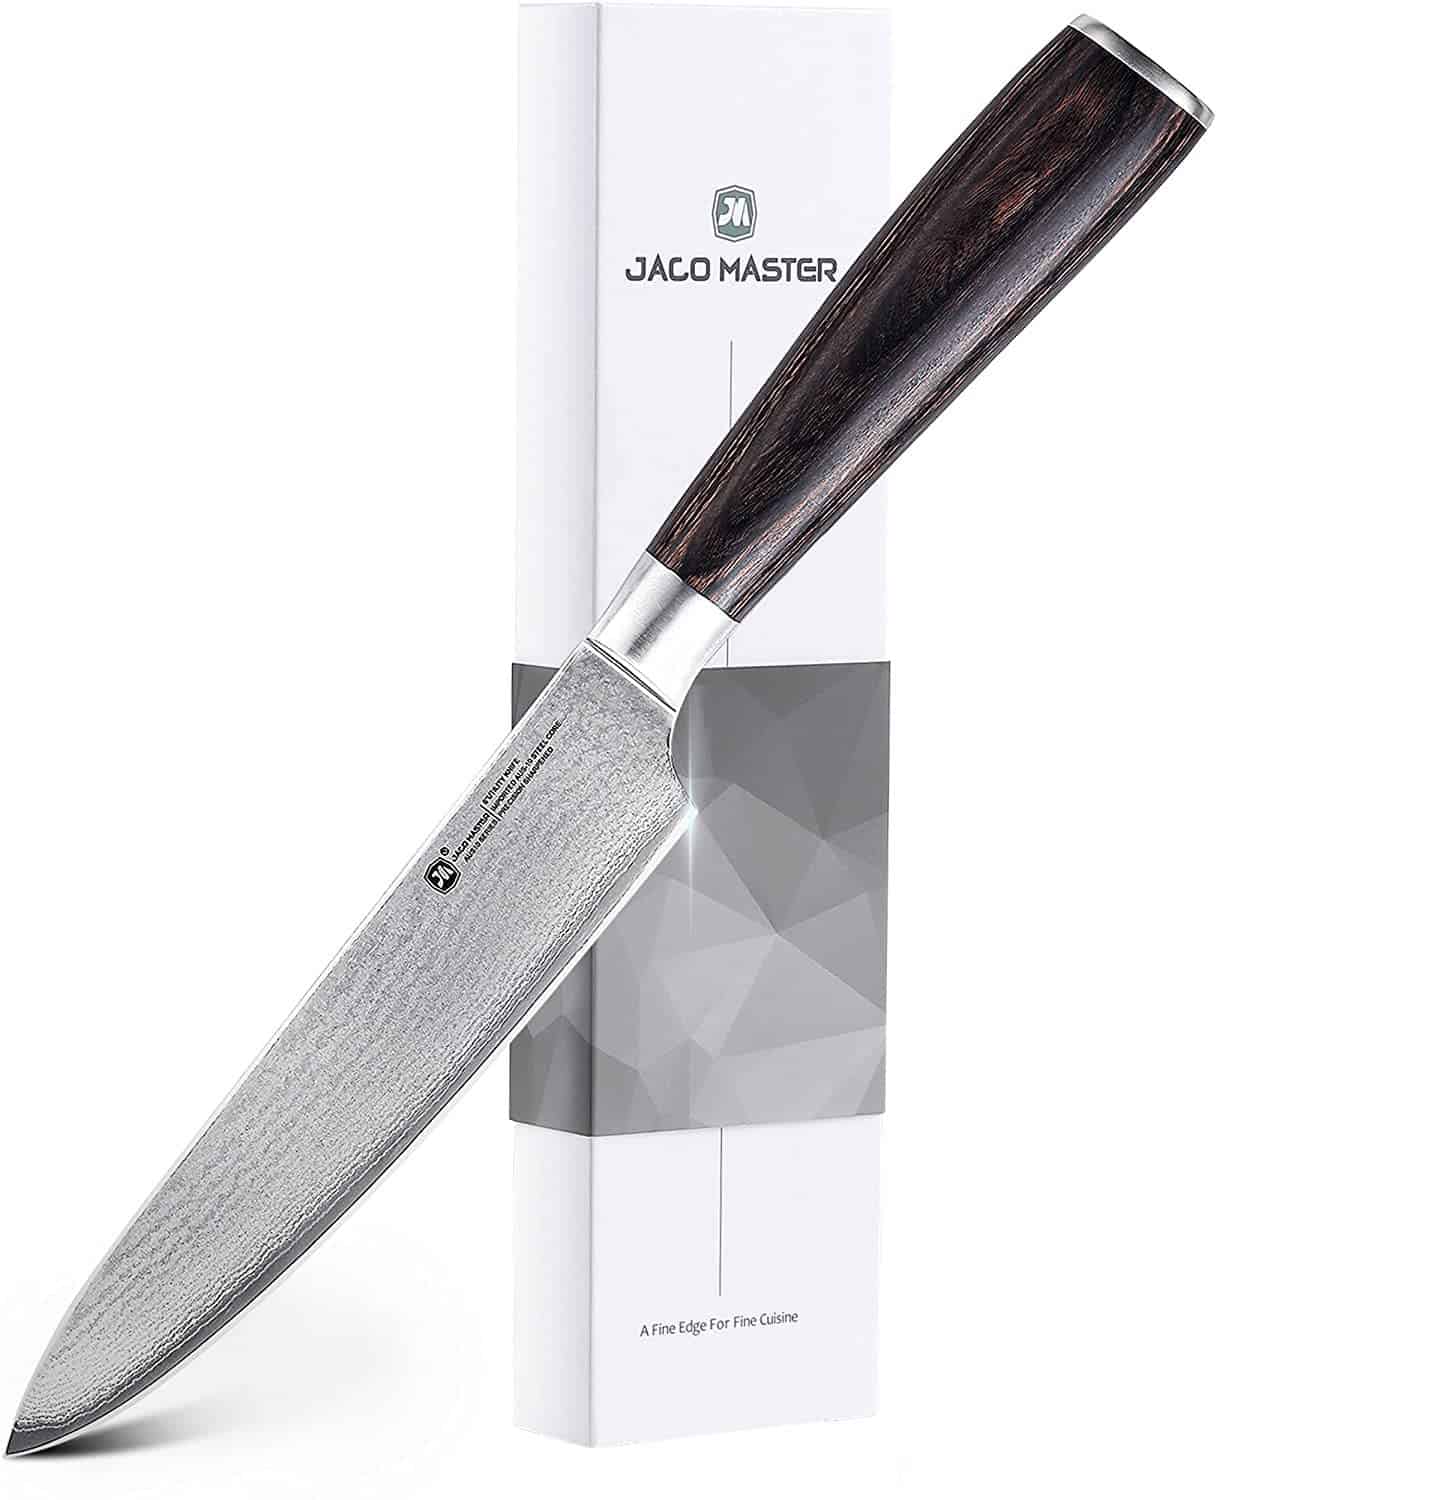 El mejor cuchillo de acero japonés AUS 10 económico: cuchillo de chef Jaco Master 6 Utility